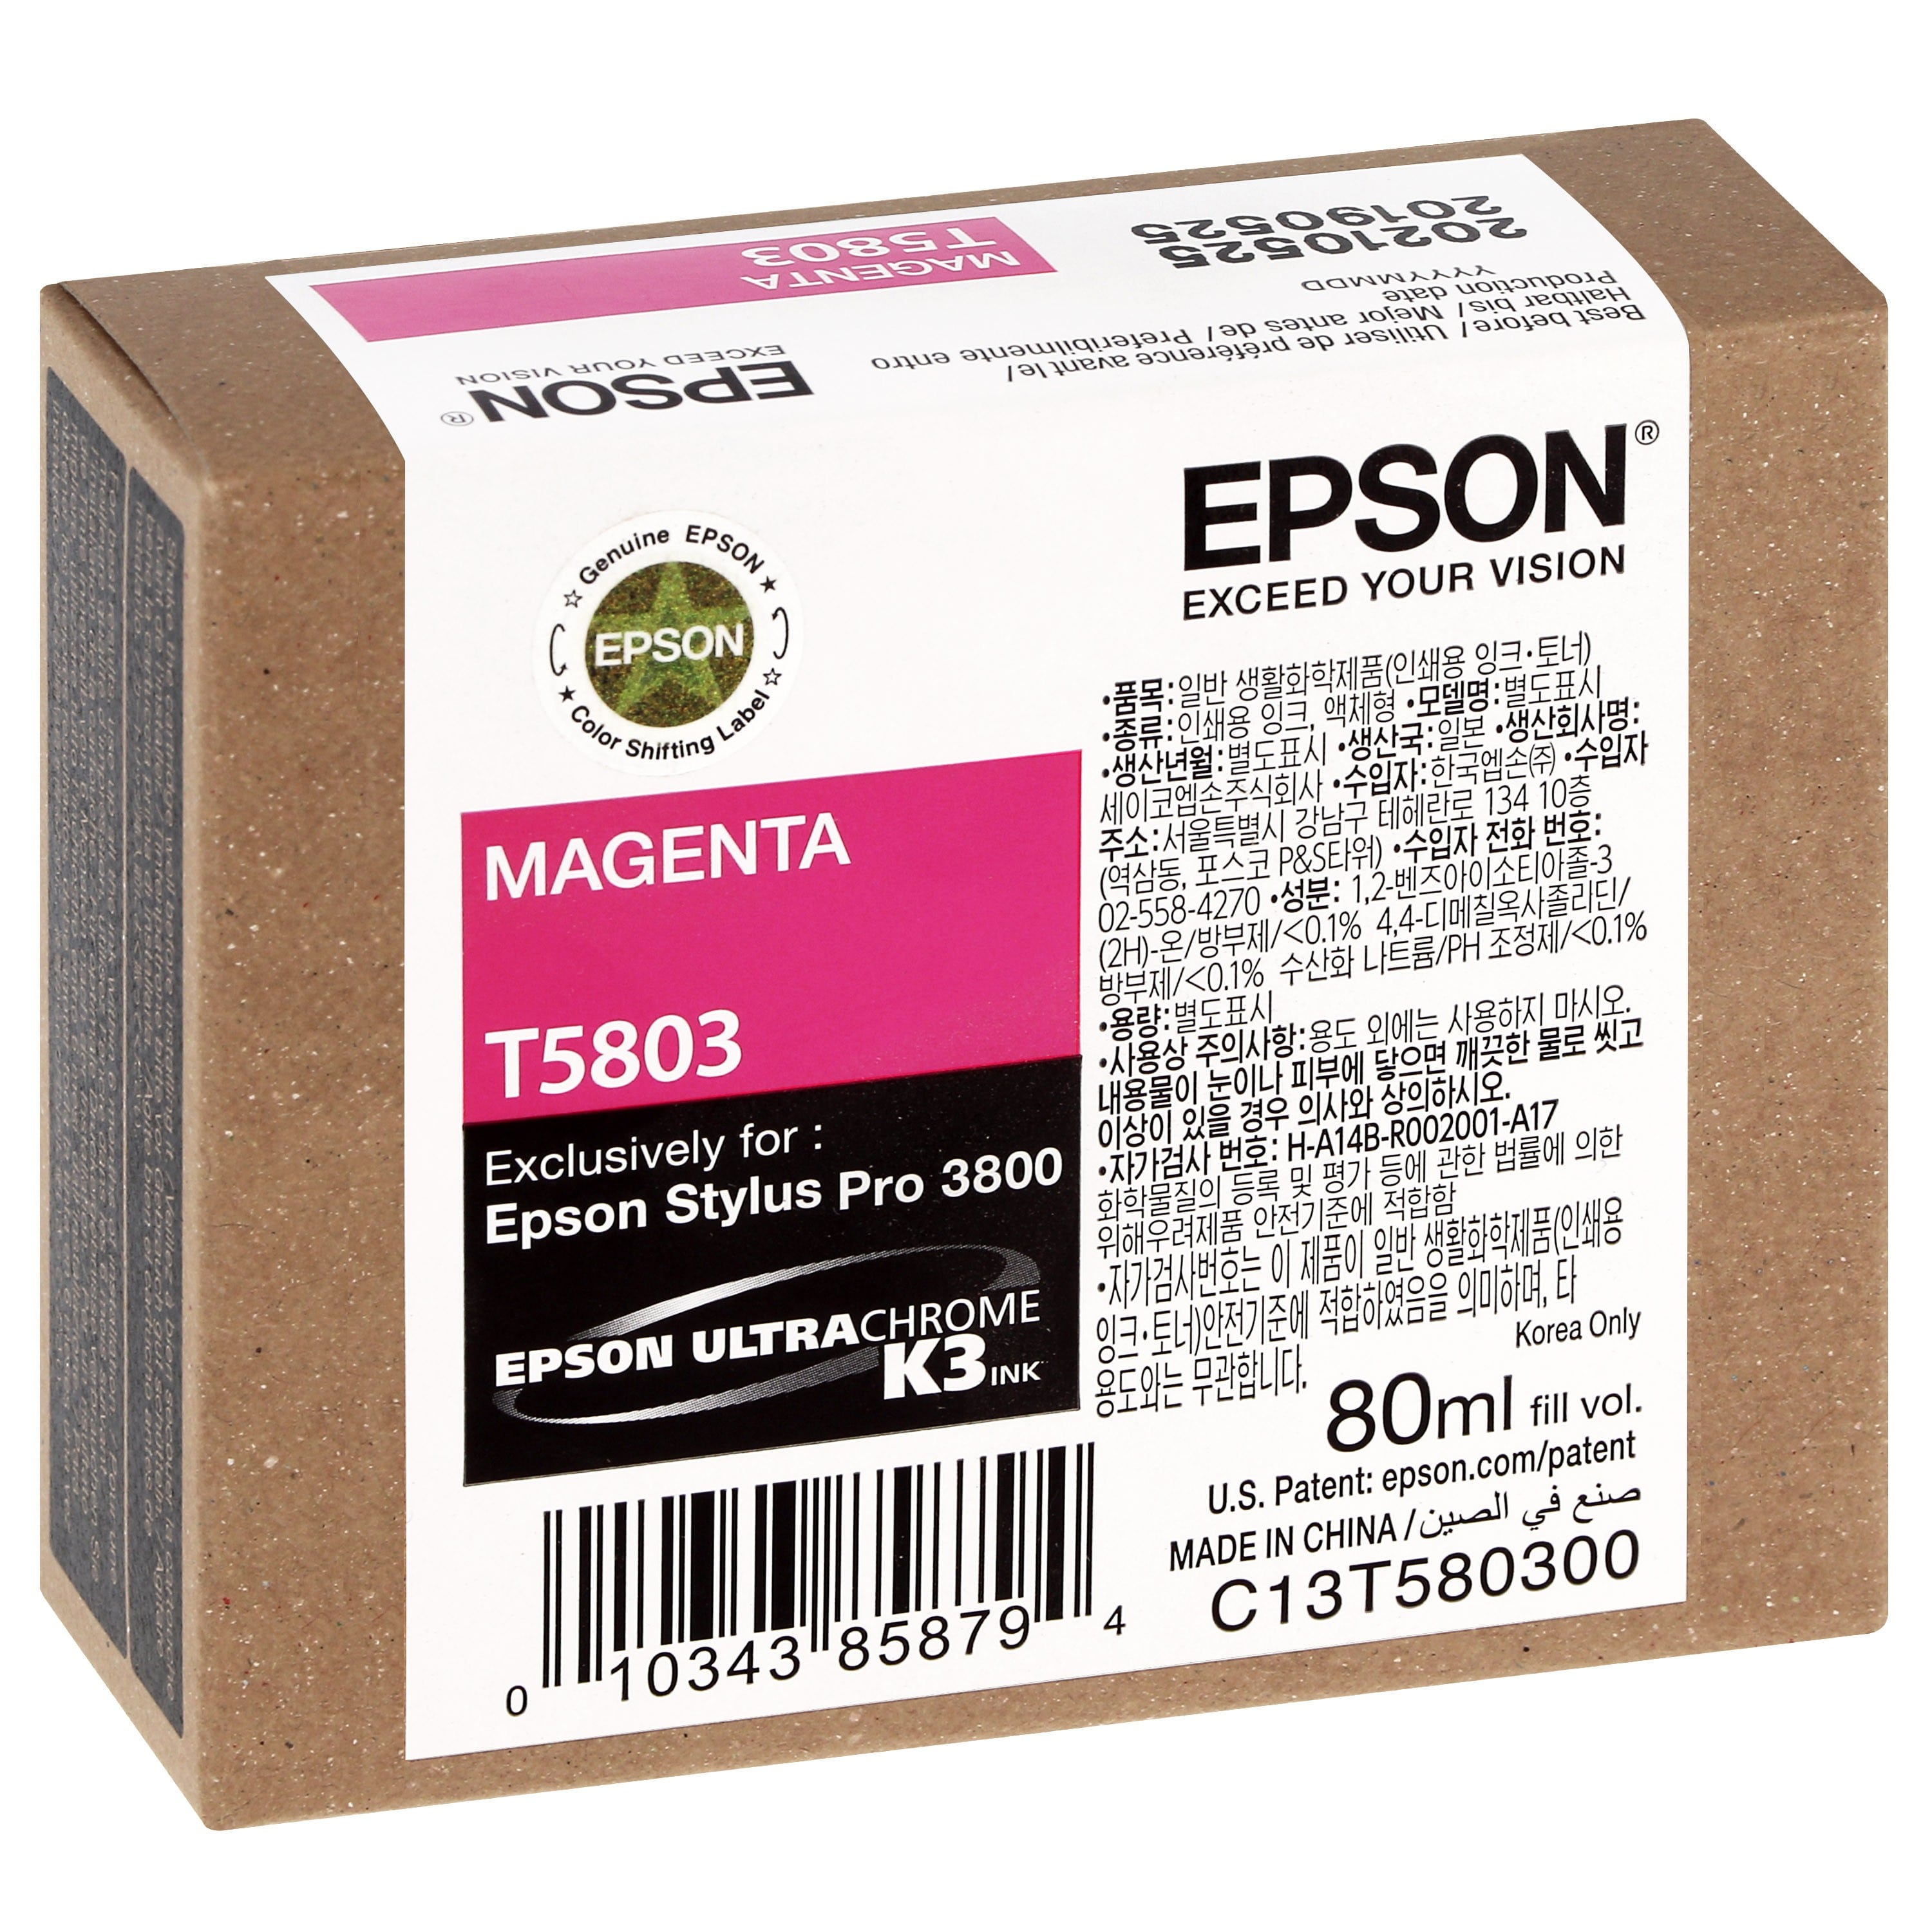 EPSON - Cartouche d'encre traceur T5803 Pour imprimante 3800/3880 Magenta - 80ml